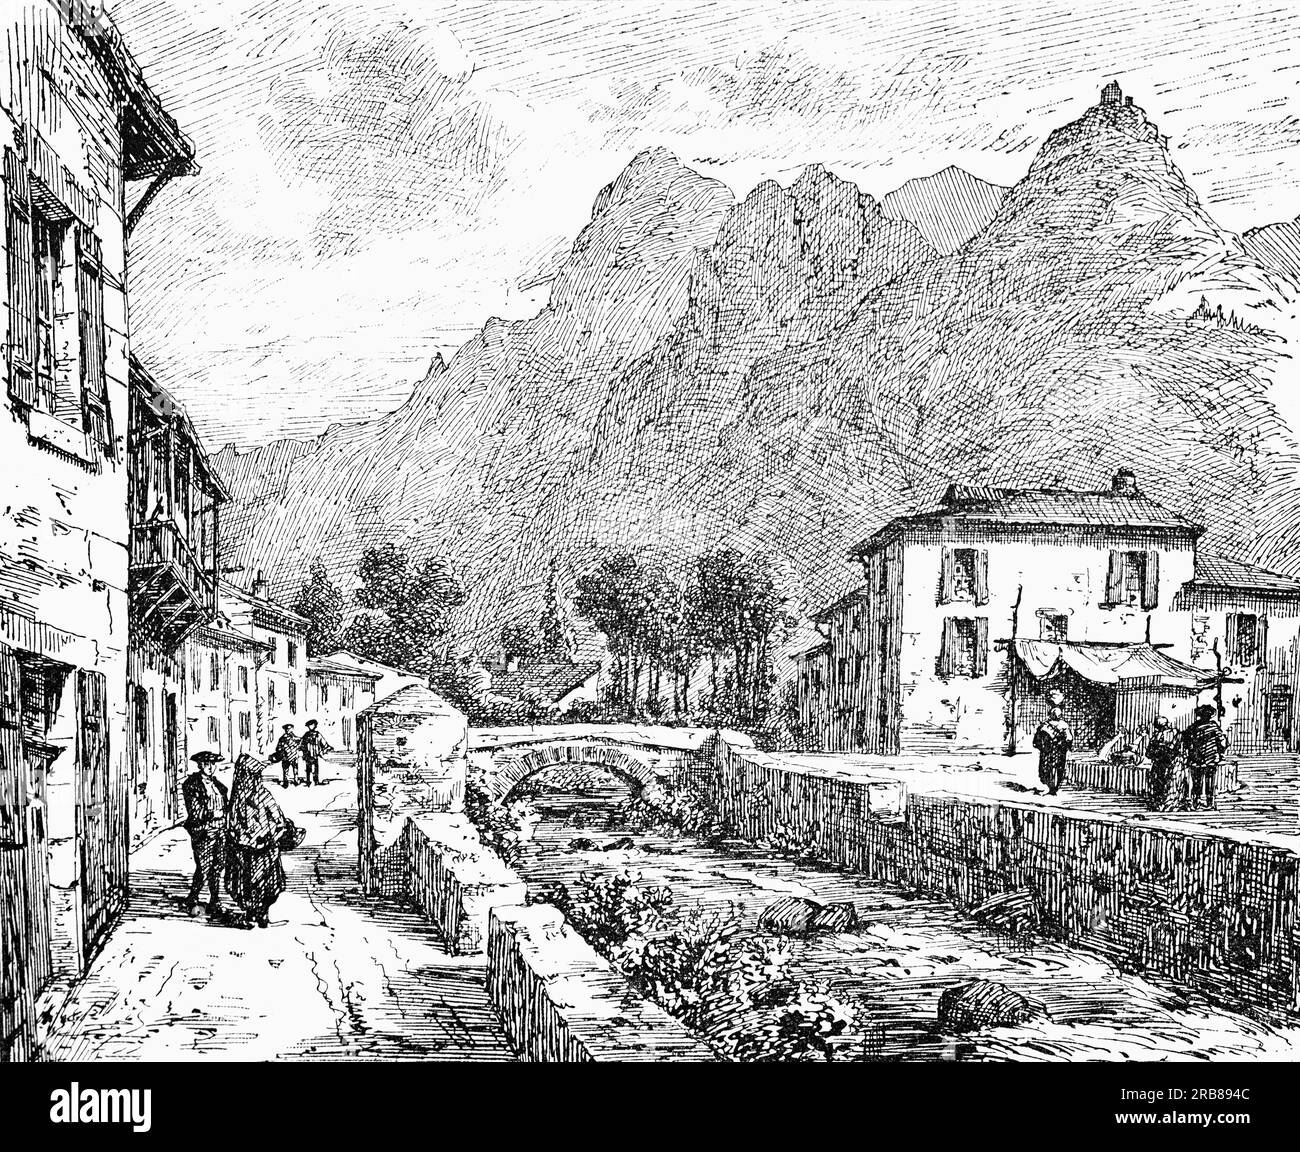 Une illustration de la fin du 19e siècle d'Auzat, une commune du département de l'Ariège dans la région Occitanie dans le sud-ouest de la France, située à la frontière entre la France et l'Espagne. Banque D'Images